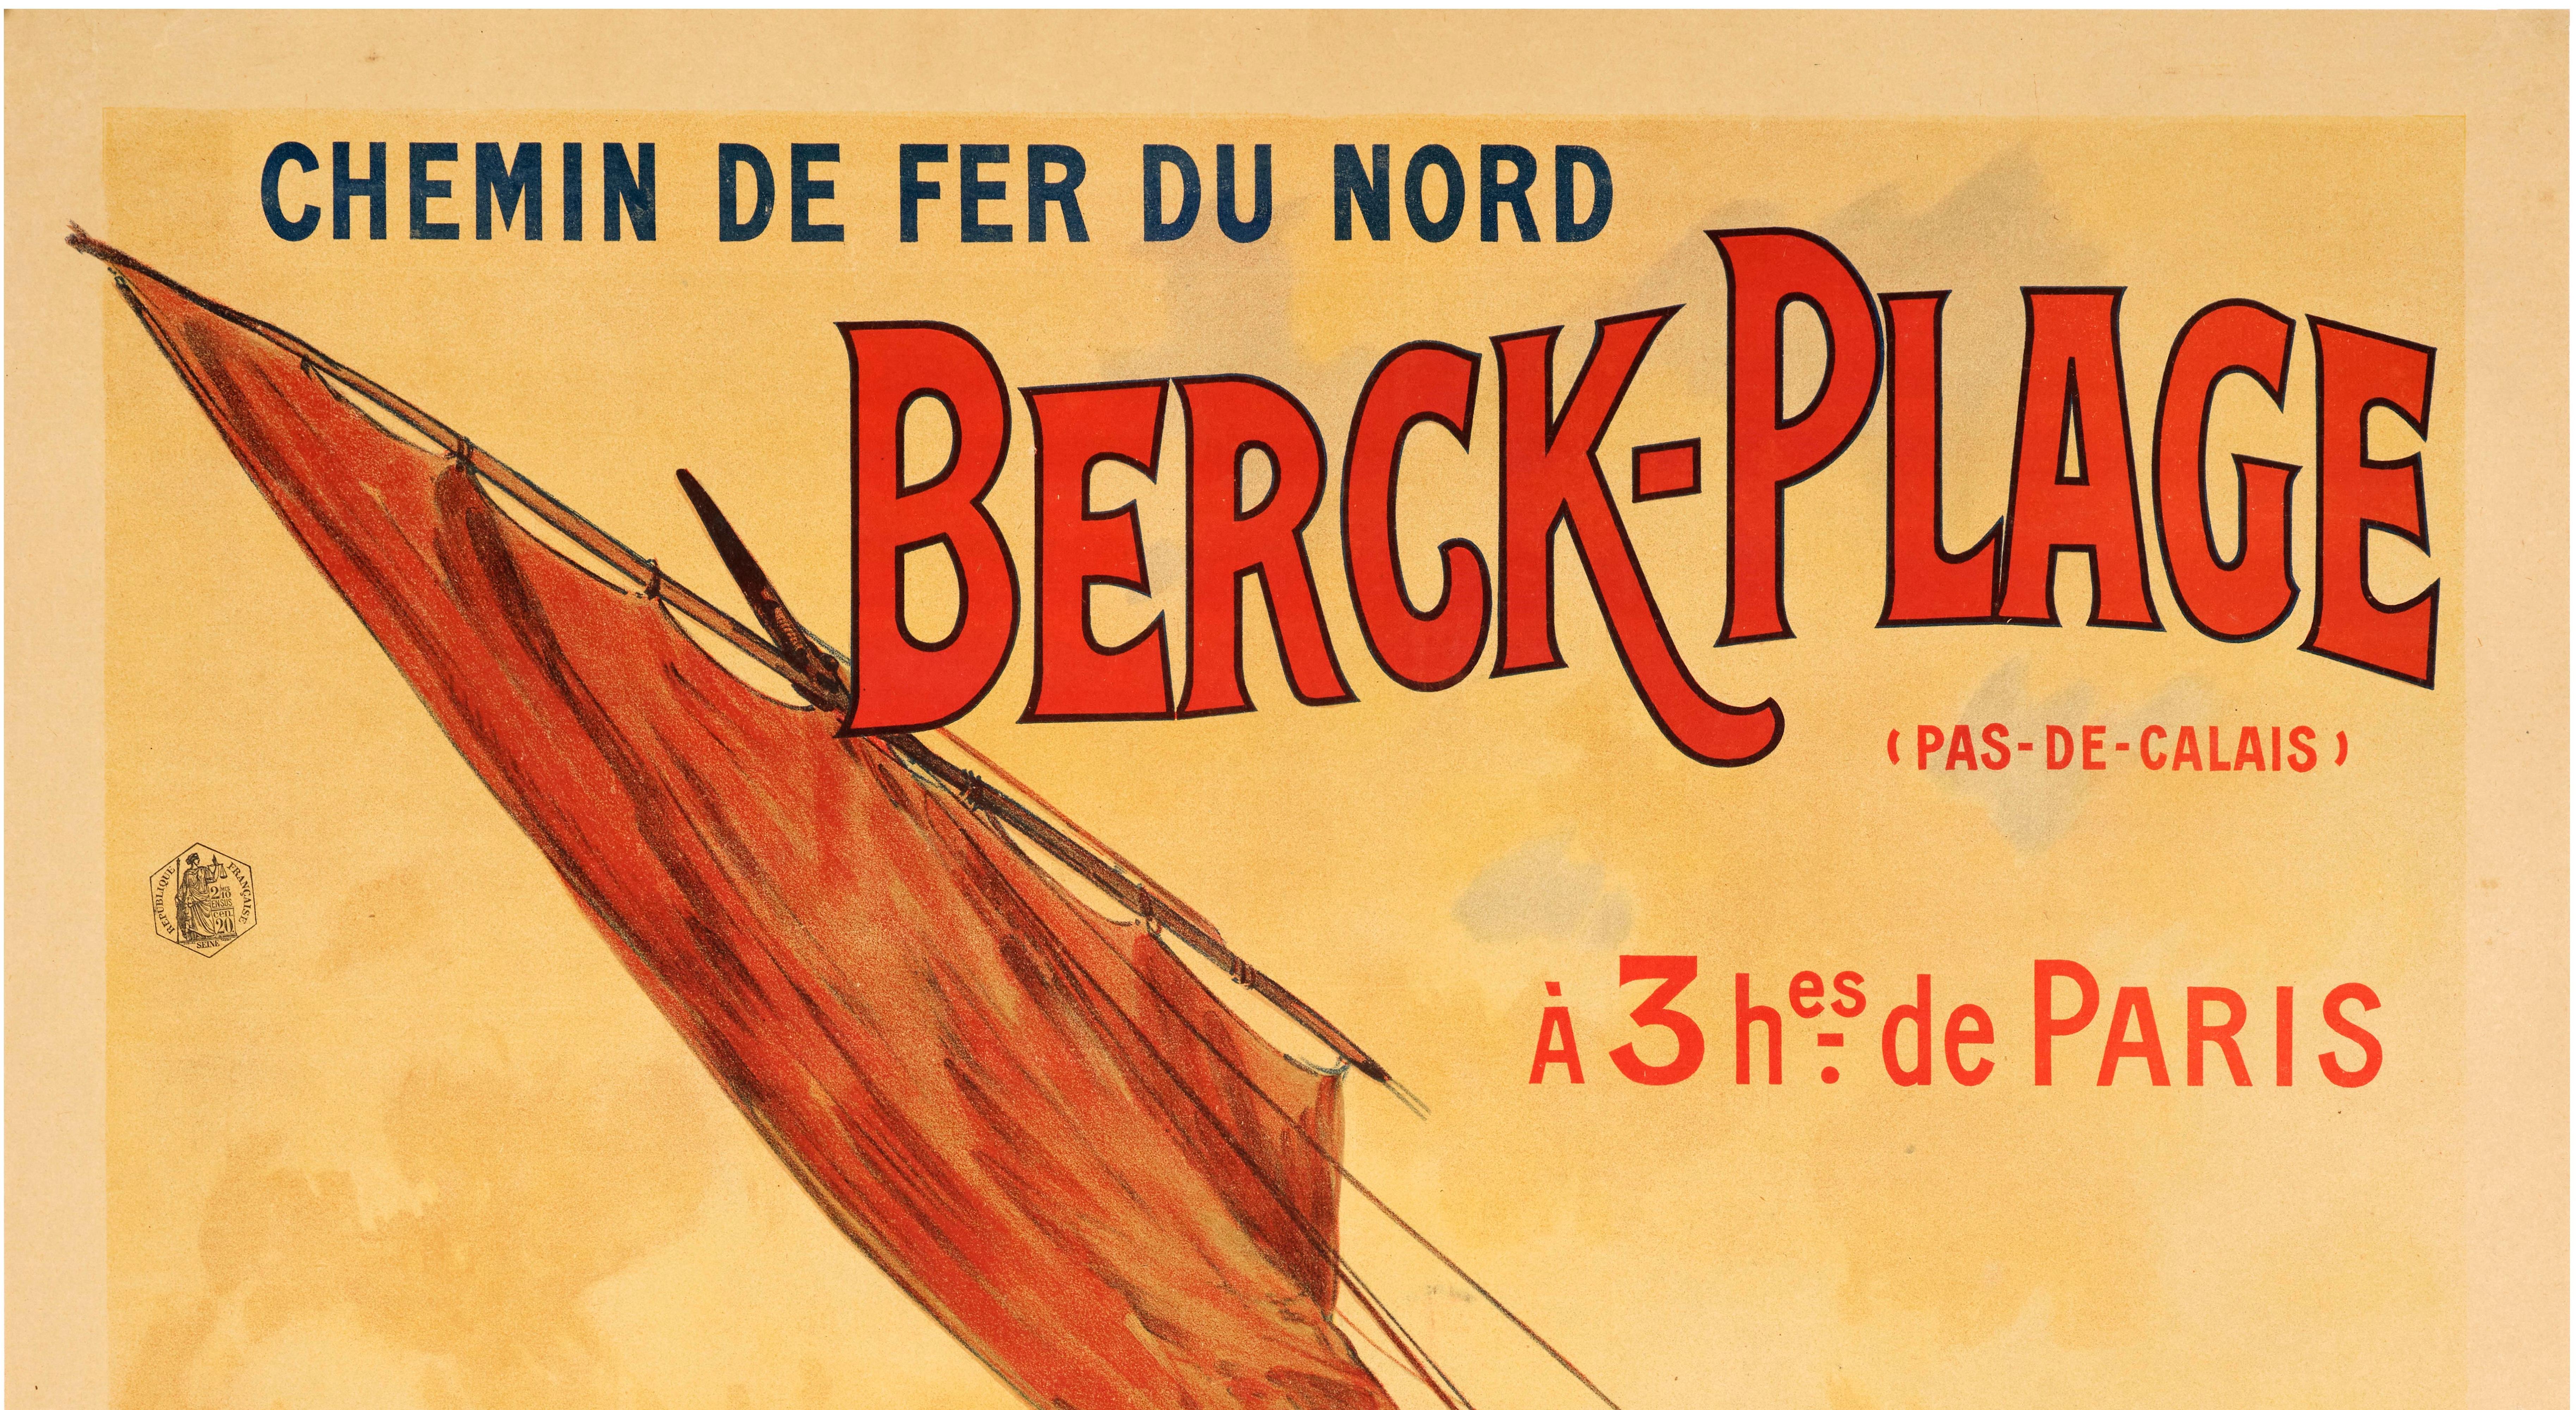 Affiche des Chemins de Fer du Nord réalisée par Louis Tauzin en 1905 pour promouvoir le tourisme à Berck Plage (Pas-de-Calais) à 3 heures de Paris.

Artistics : Louis Tauzin (1842-1915)
Titre : Berck Plage - Chemins de fer du Nord.
Date :